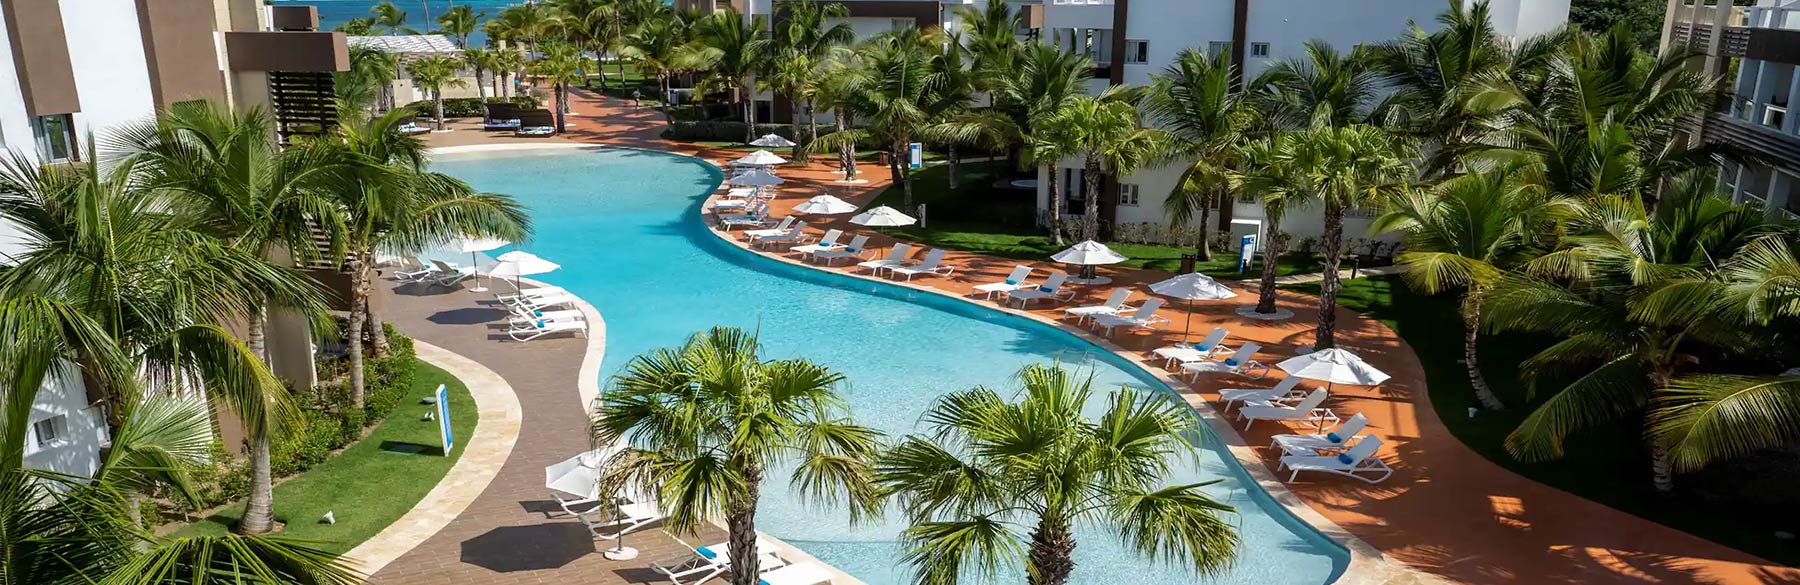 Radisson Blu Punta Cana, An All Inclusive Beach Resort